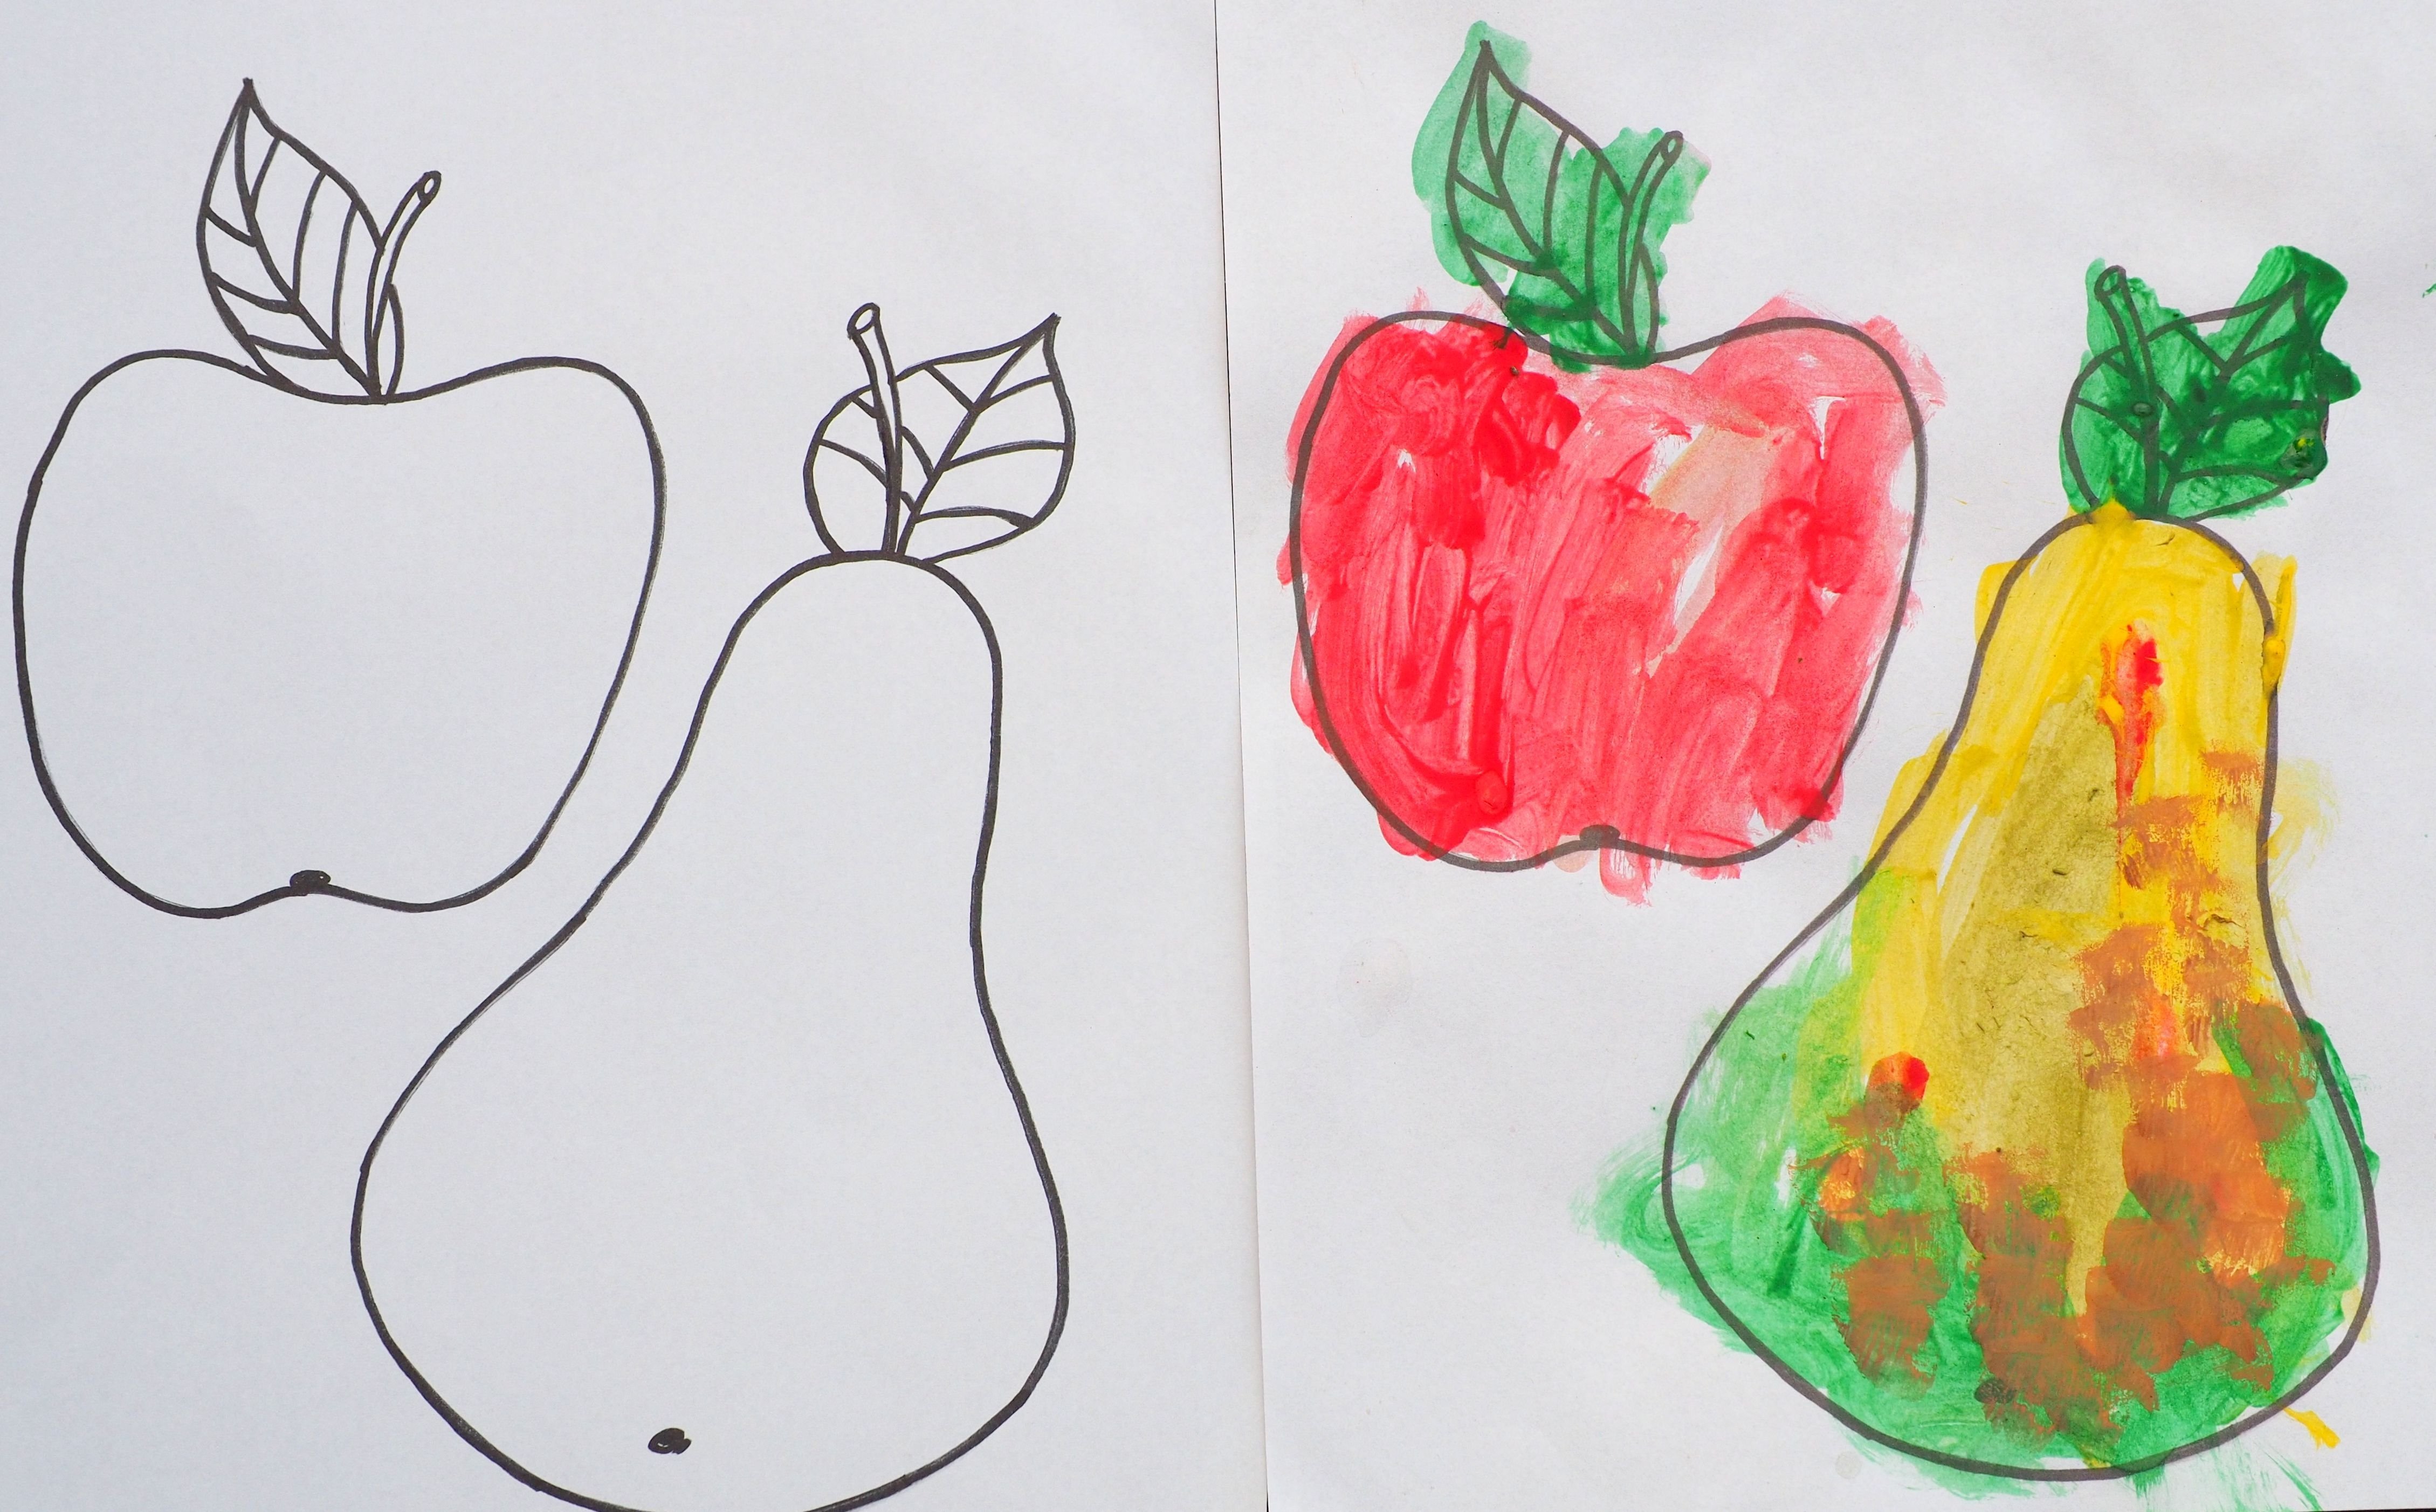 Рисование овощей и фруктов для детей